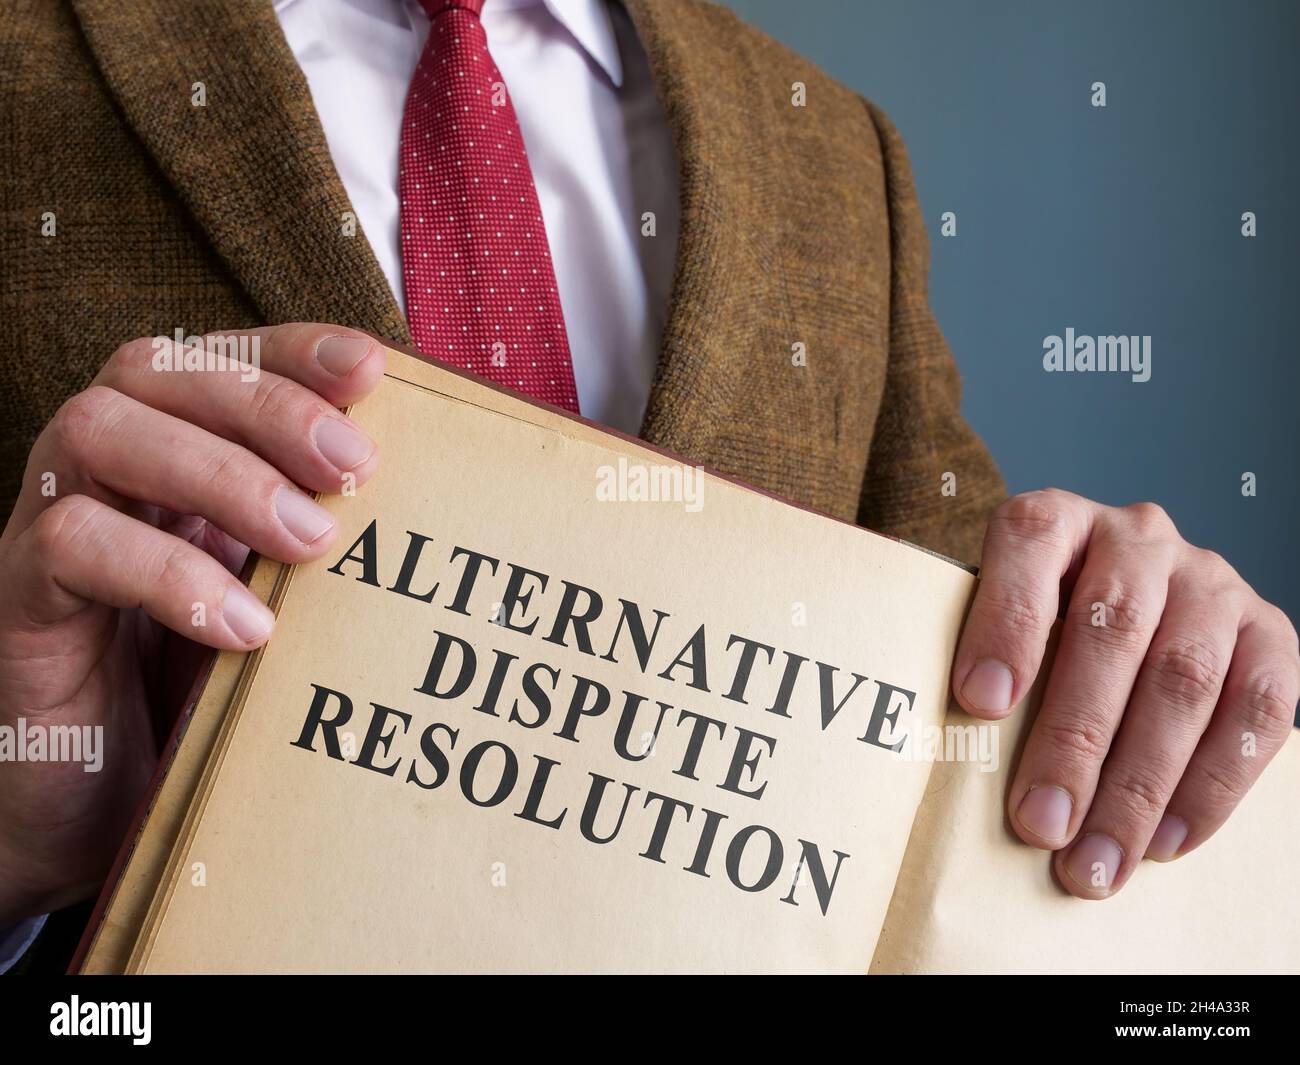 Avvocato mostra ADR metodi alternativi di risoluzione delle controversie nel libro. Foto Stock